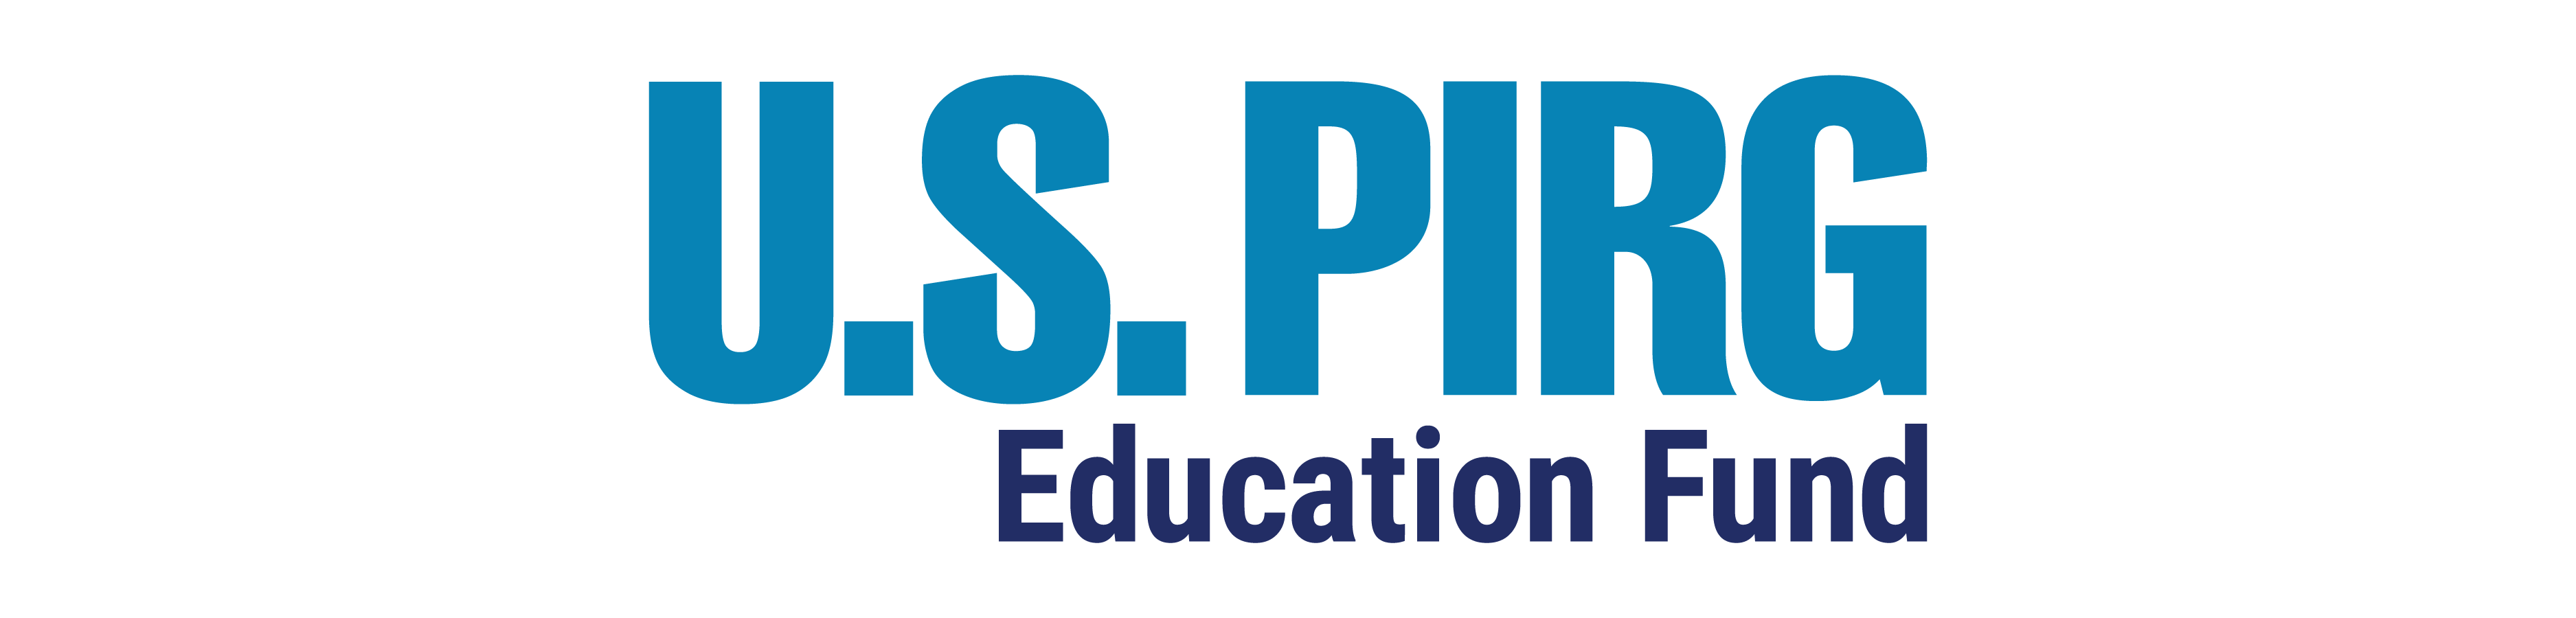 U.S. PIRG Education Fund logo